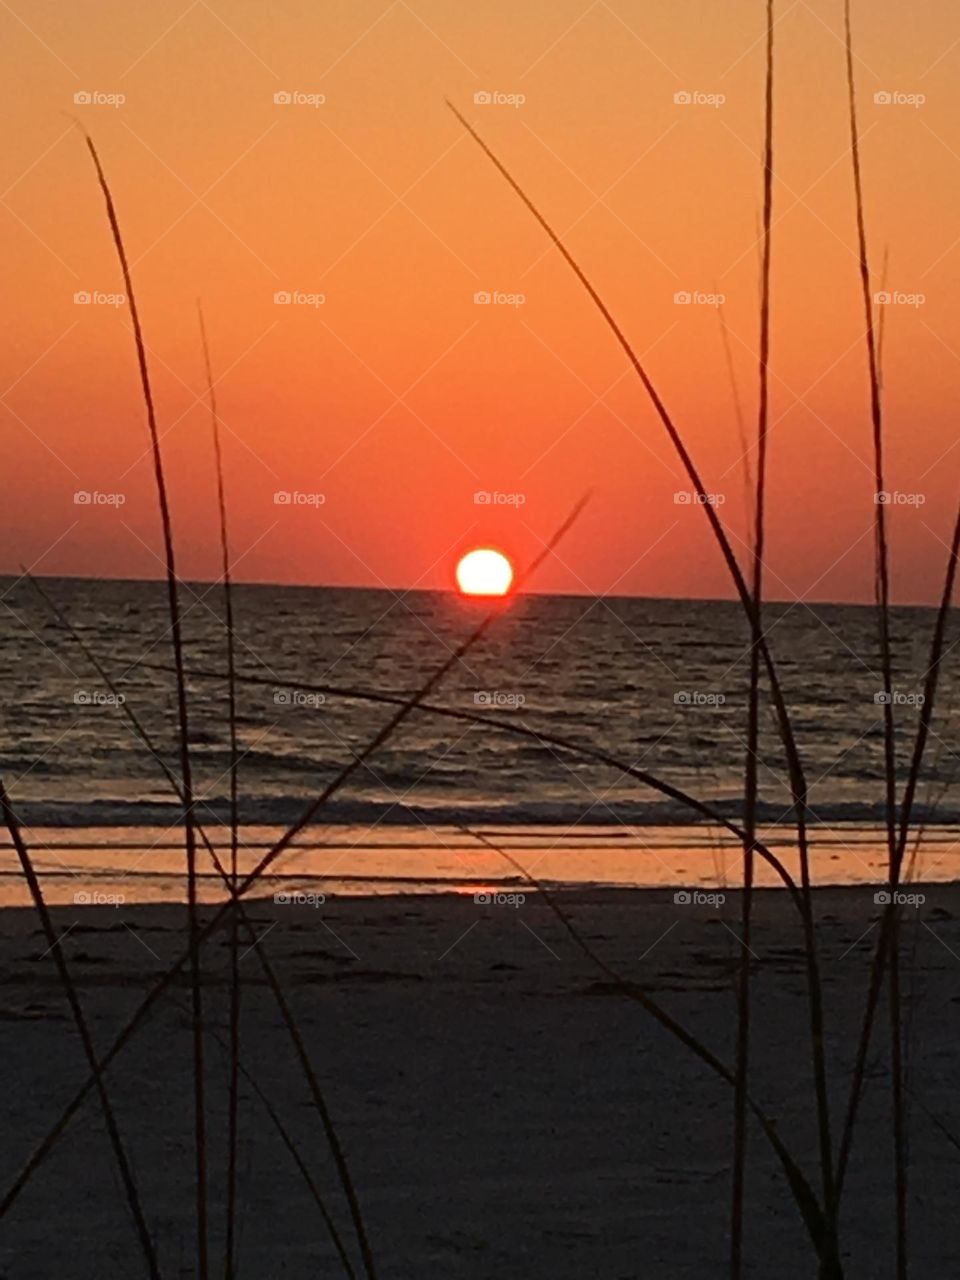 Gulf coast Florida sunset